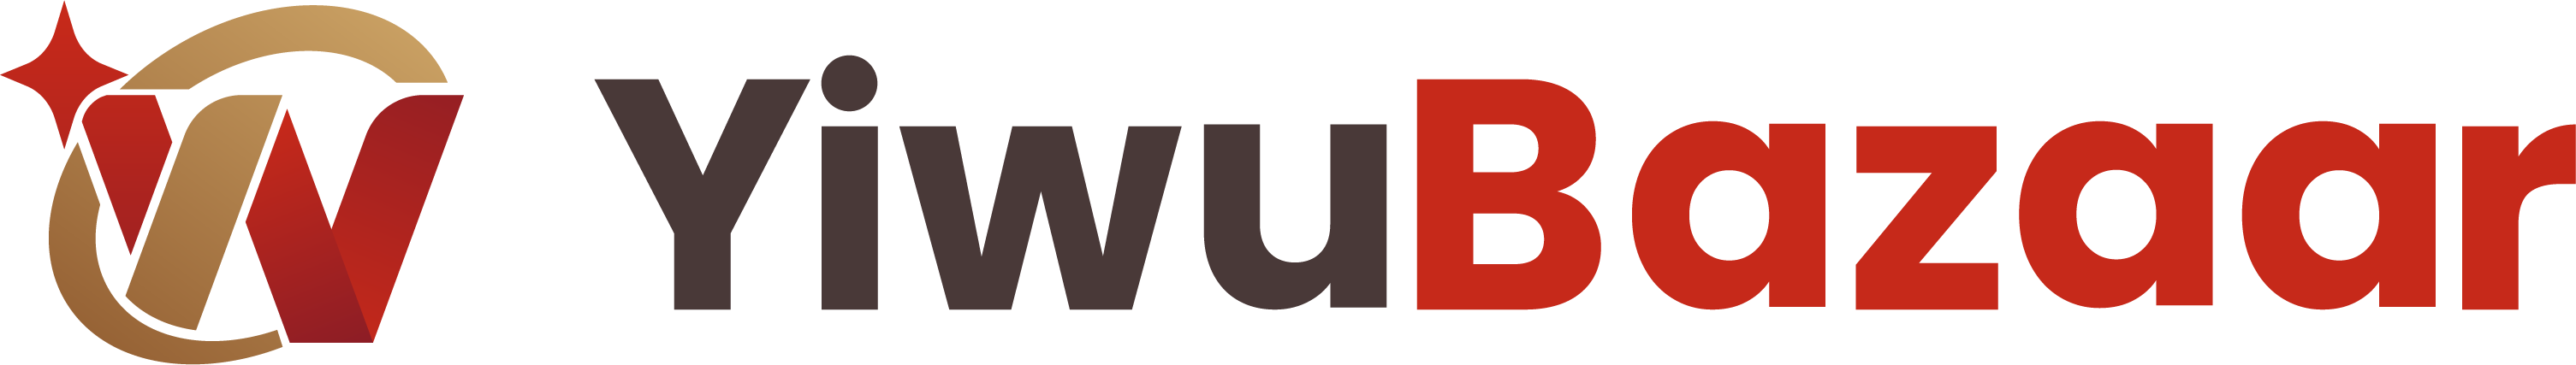 yiwubazaar logo